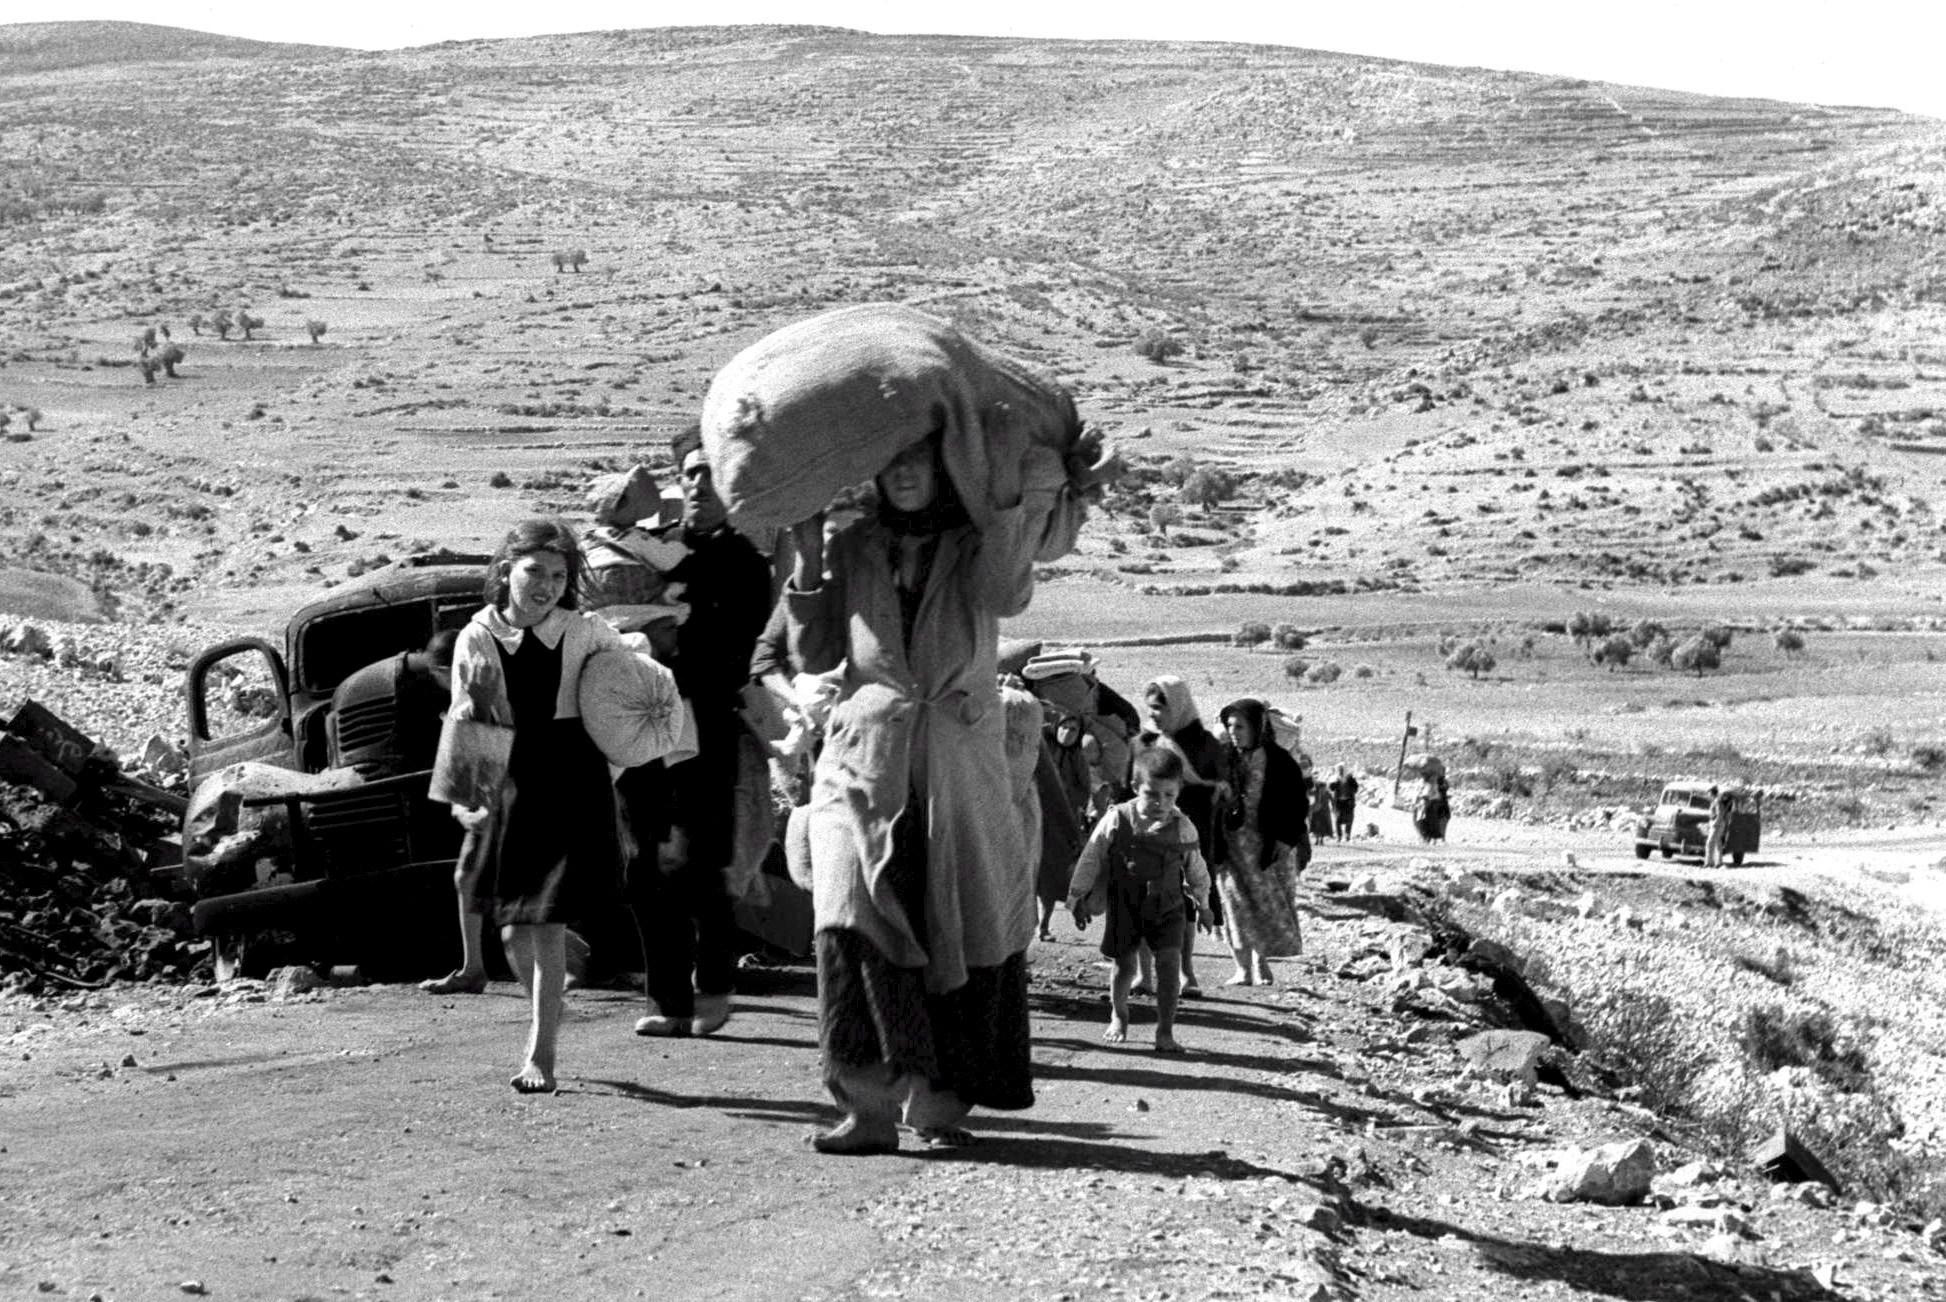 صورة تعبير عن يوم النكبة الفلسطينية 1948 كامل بالعناصر